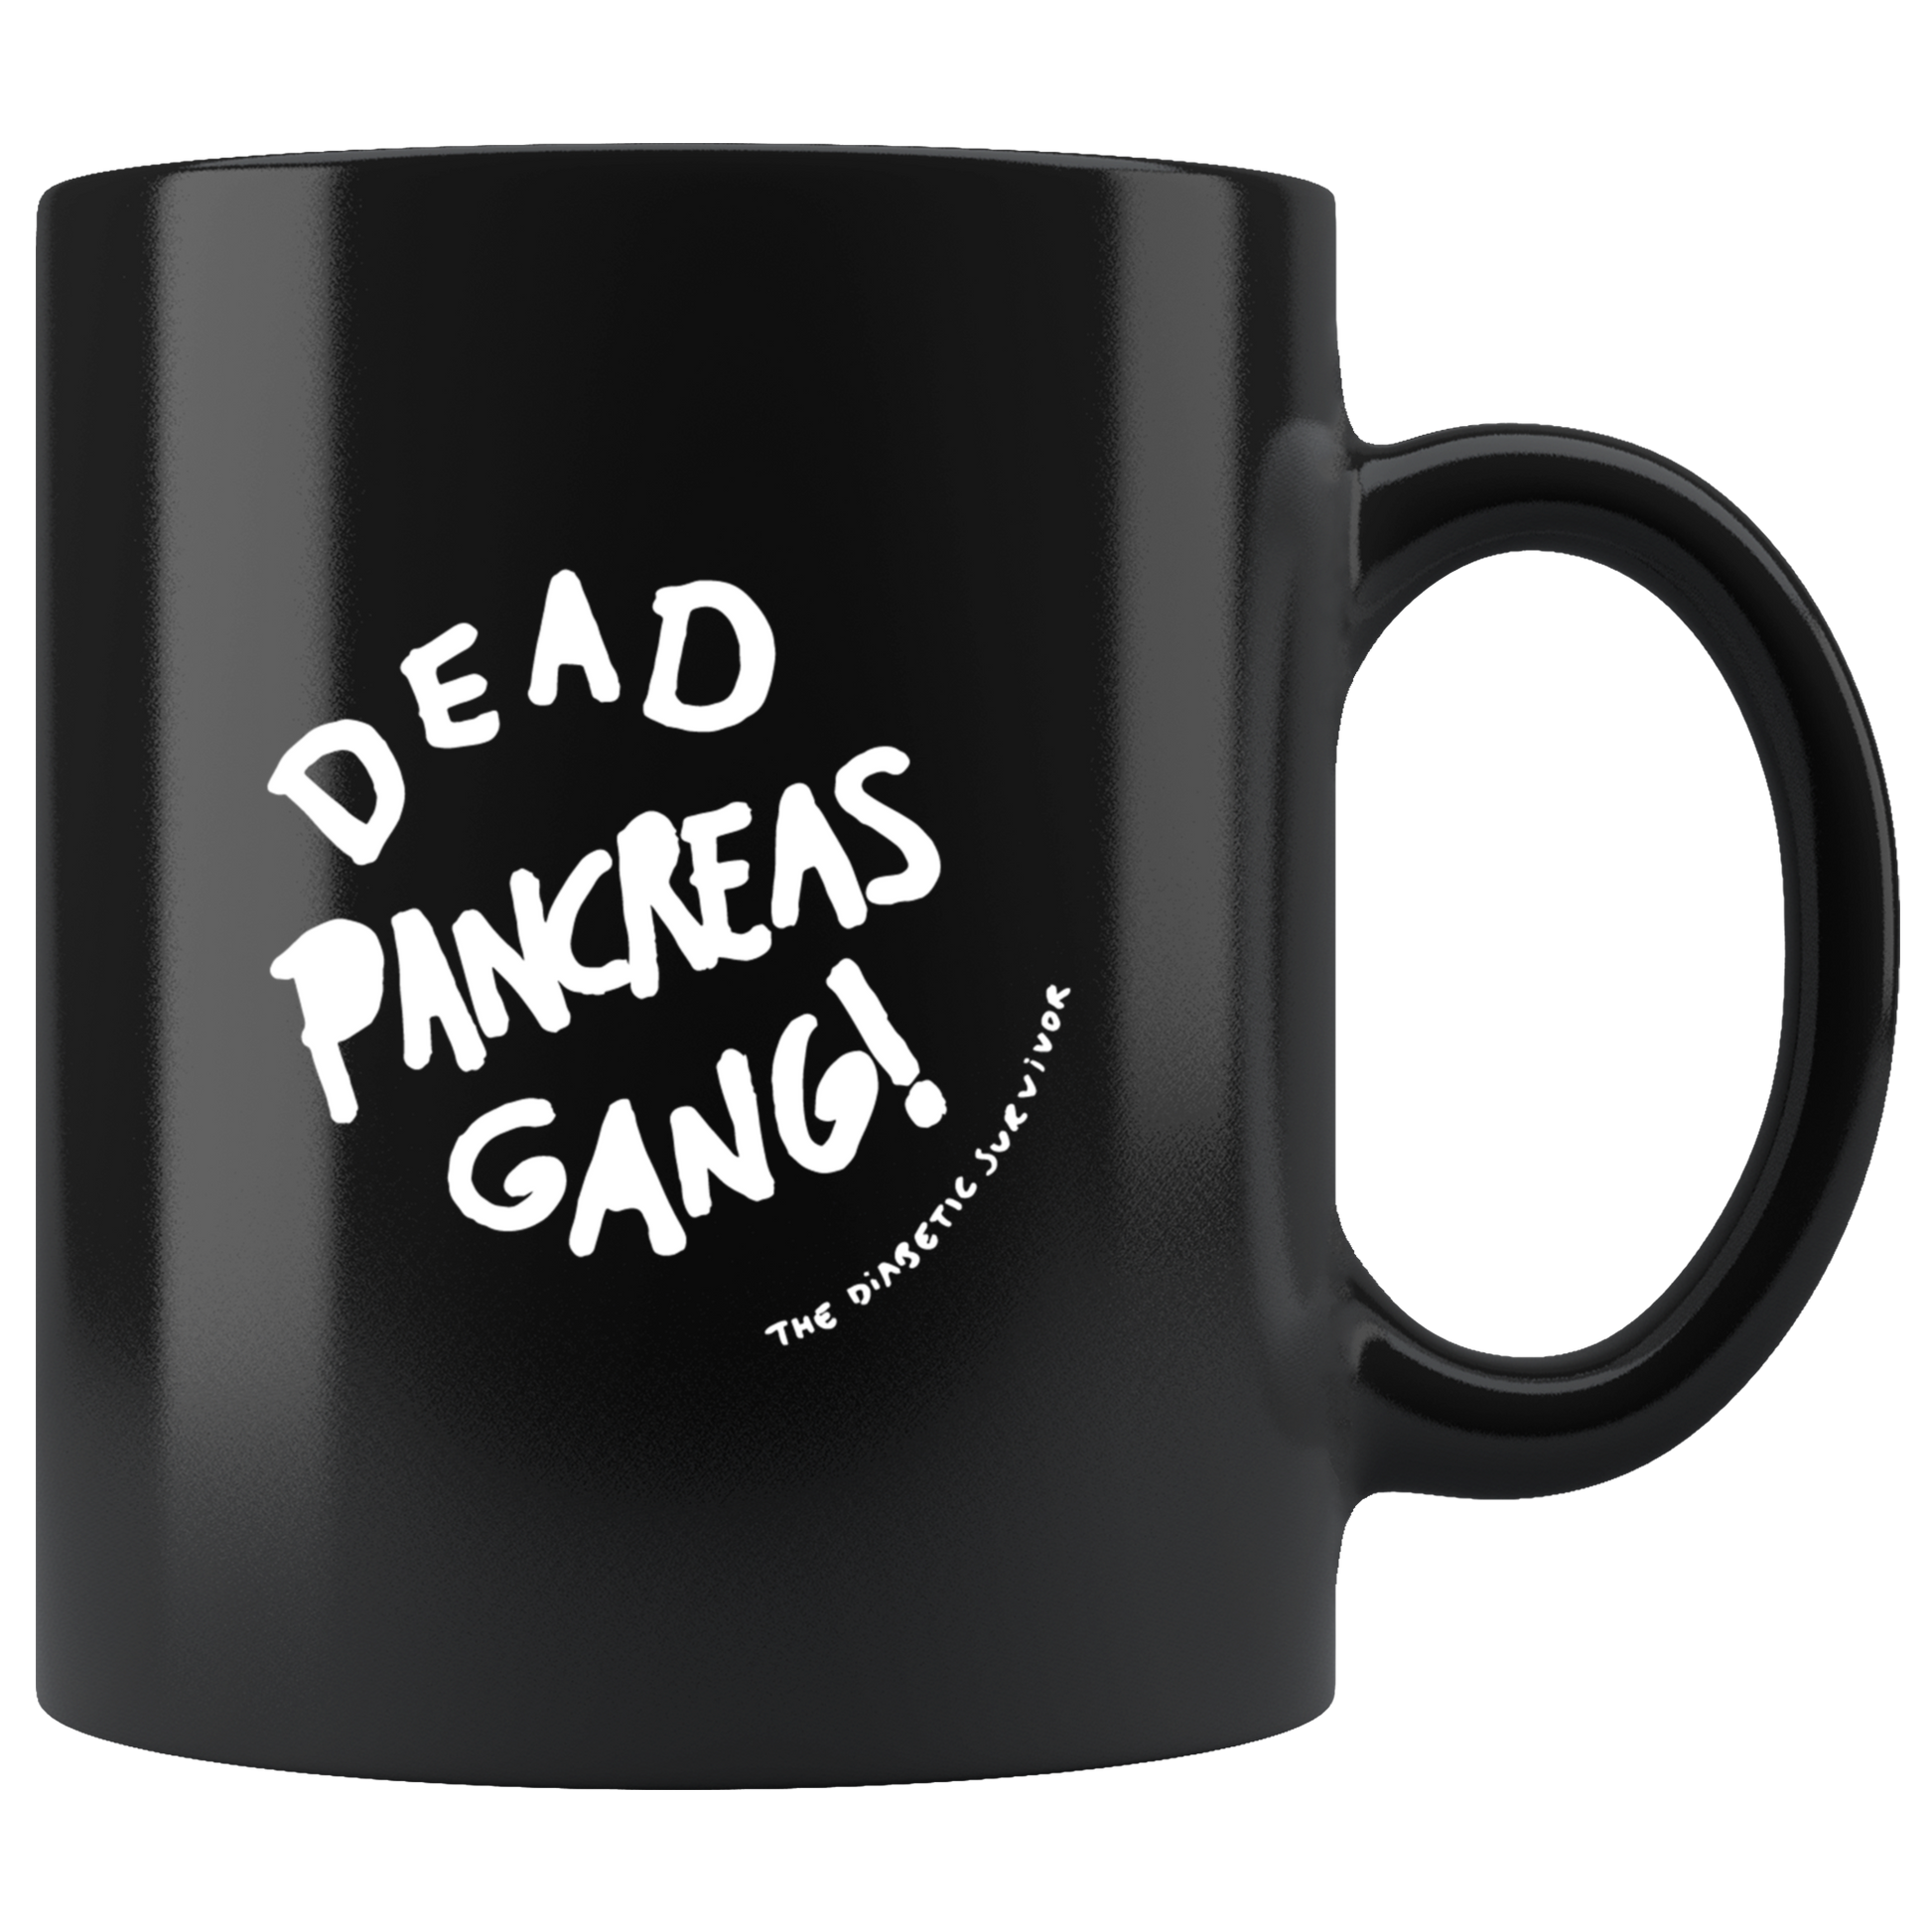 Dead Pancreas Gang